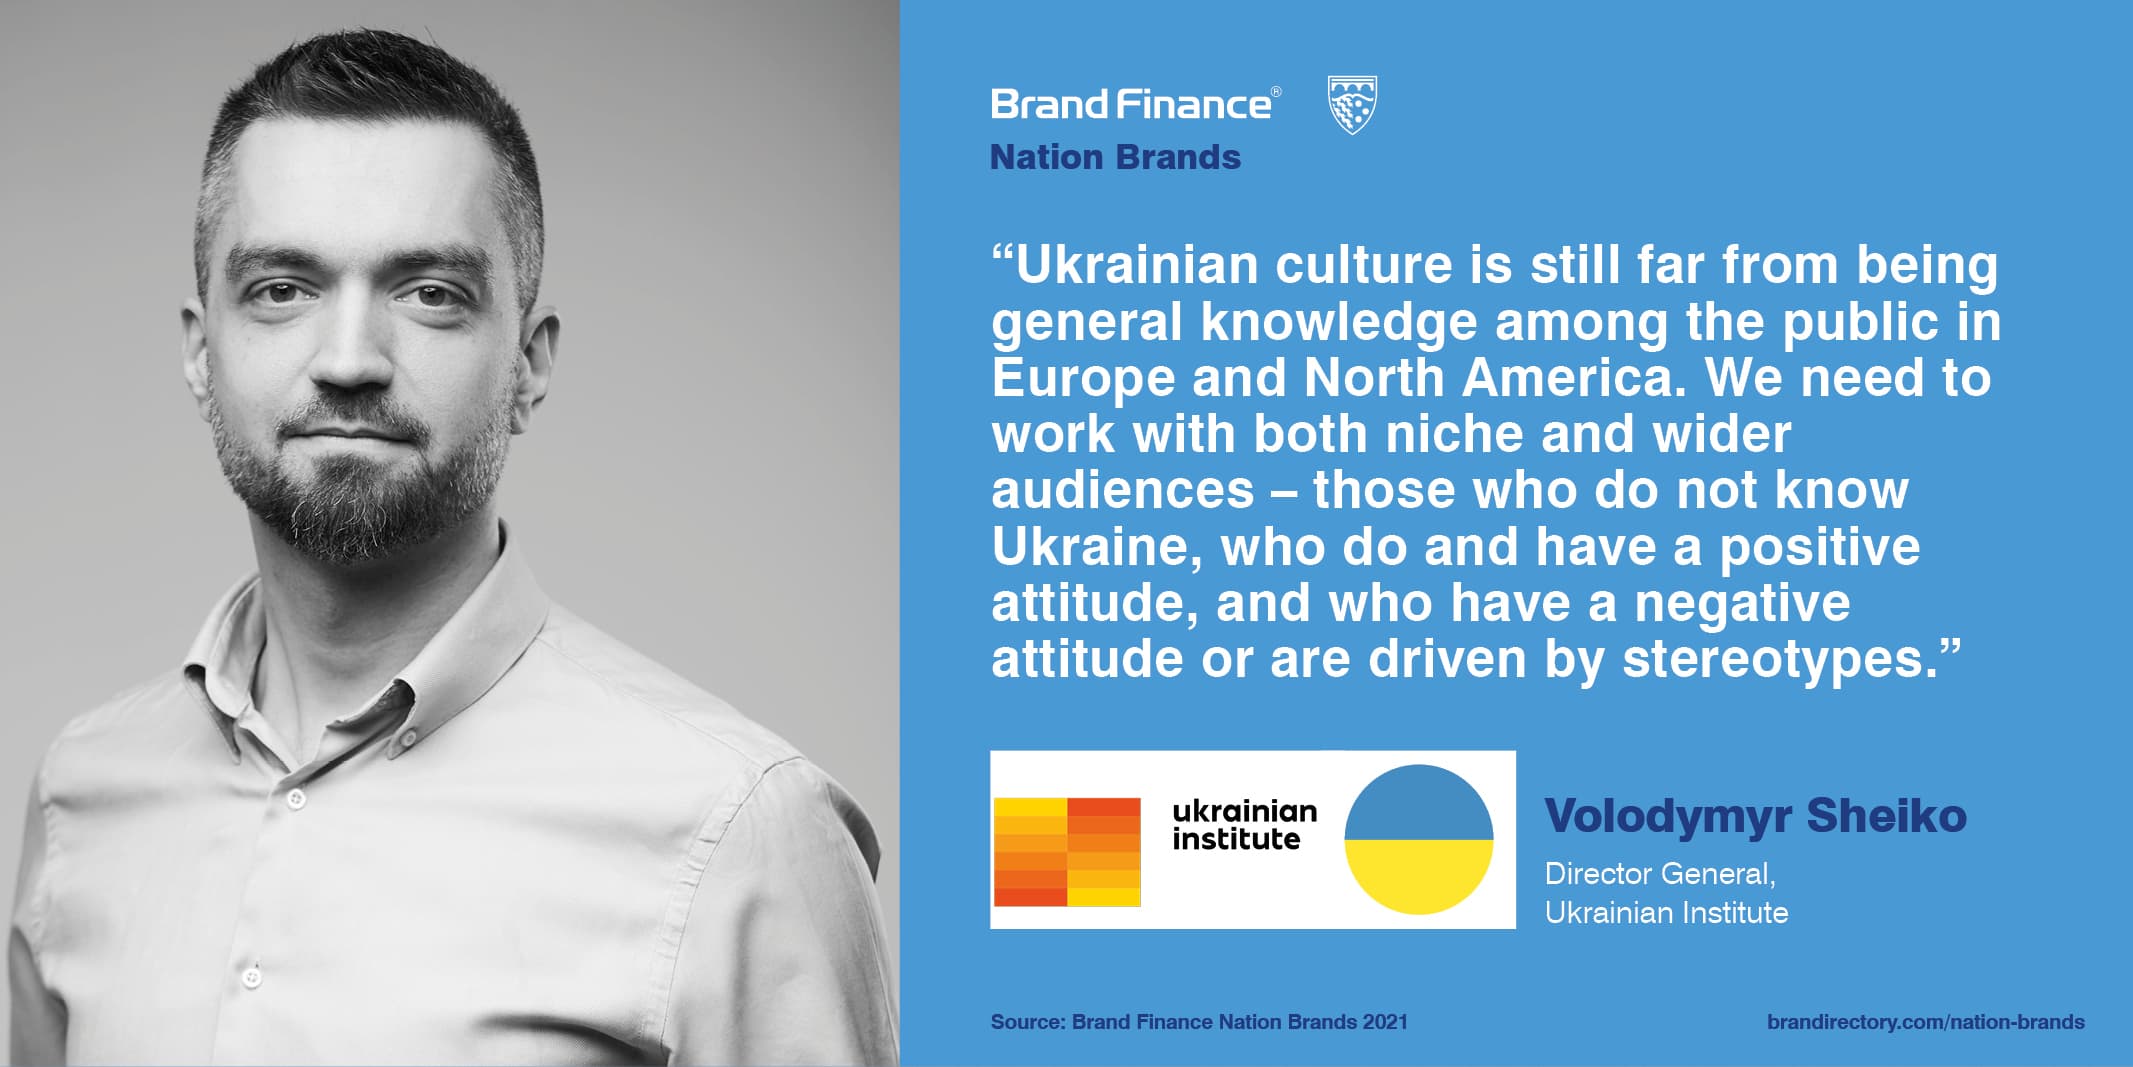 Volodymyr Sheiko, Director General, Ukrainian Institute Quote